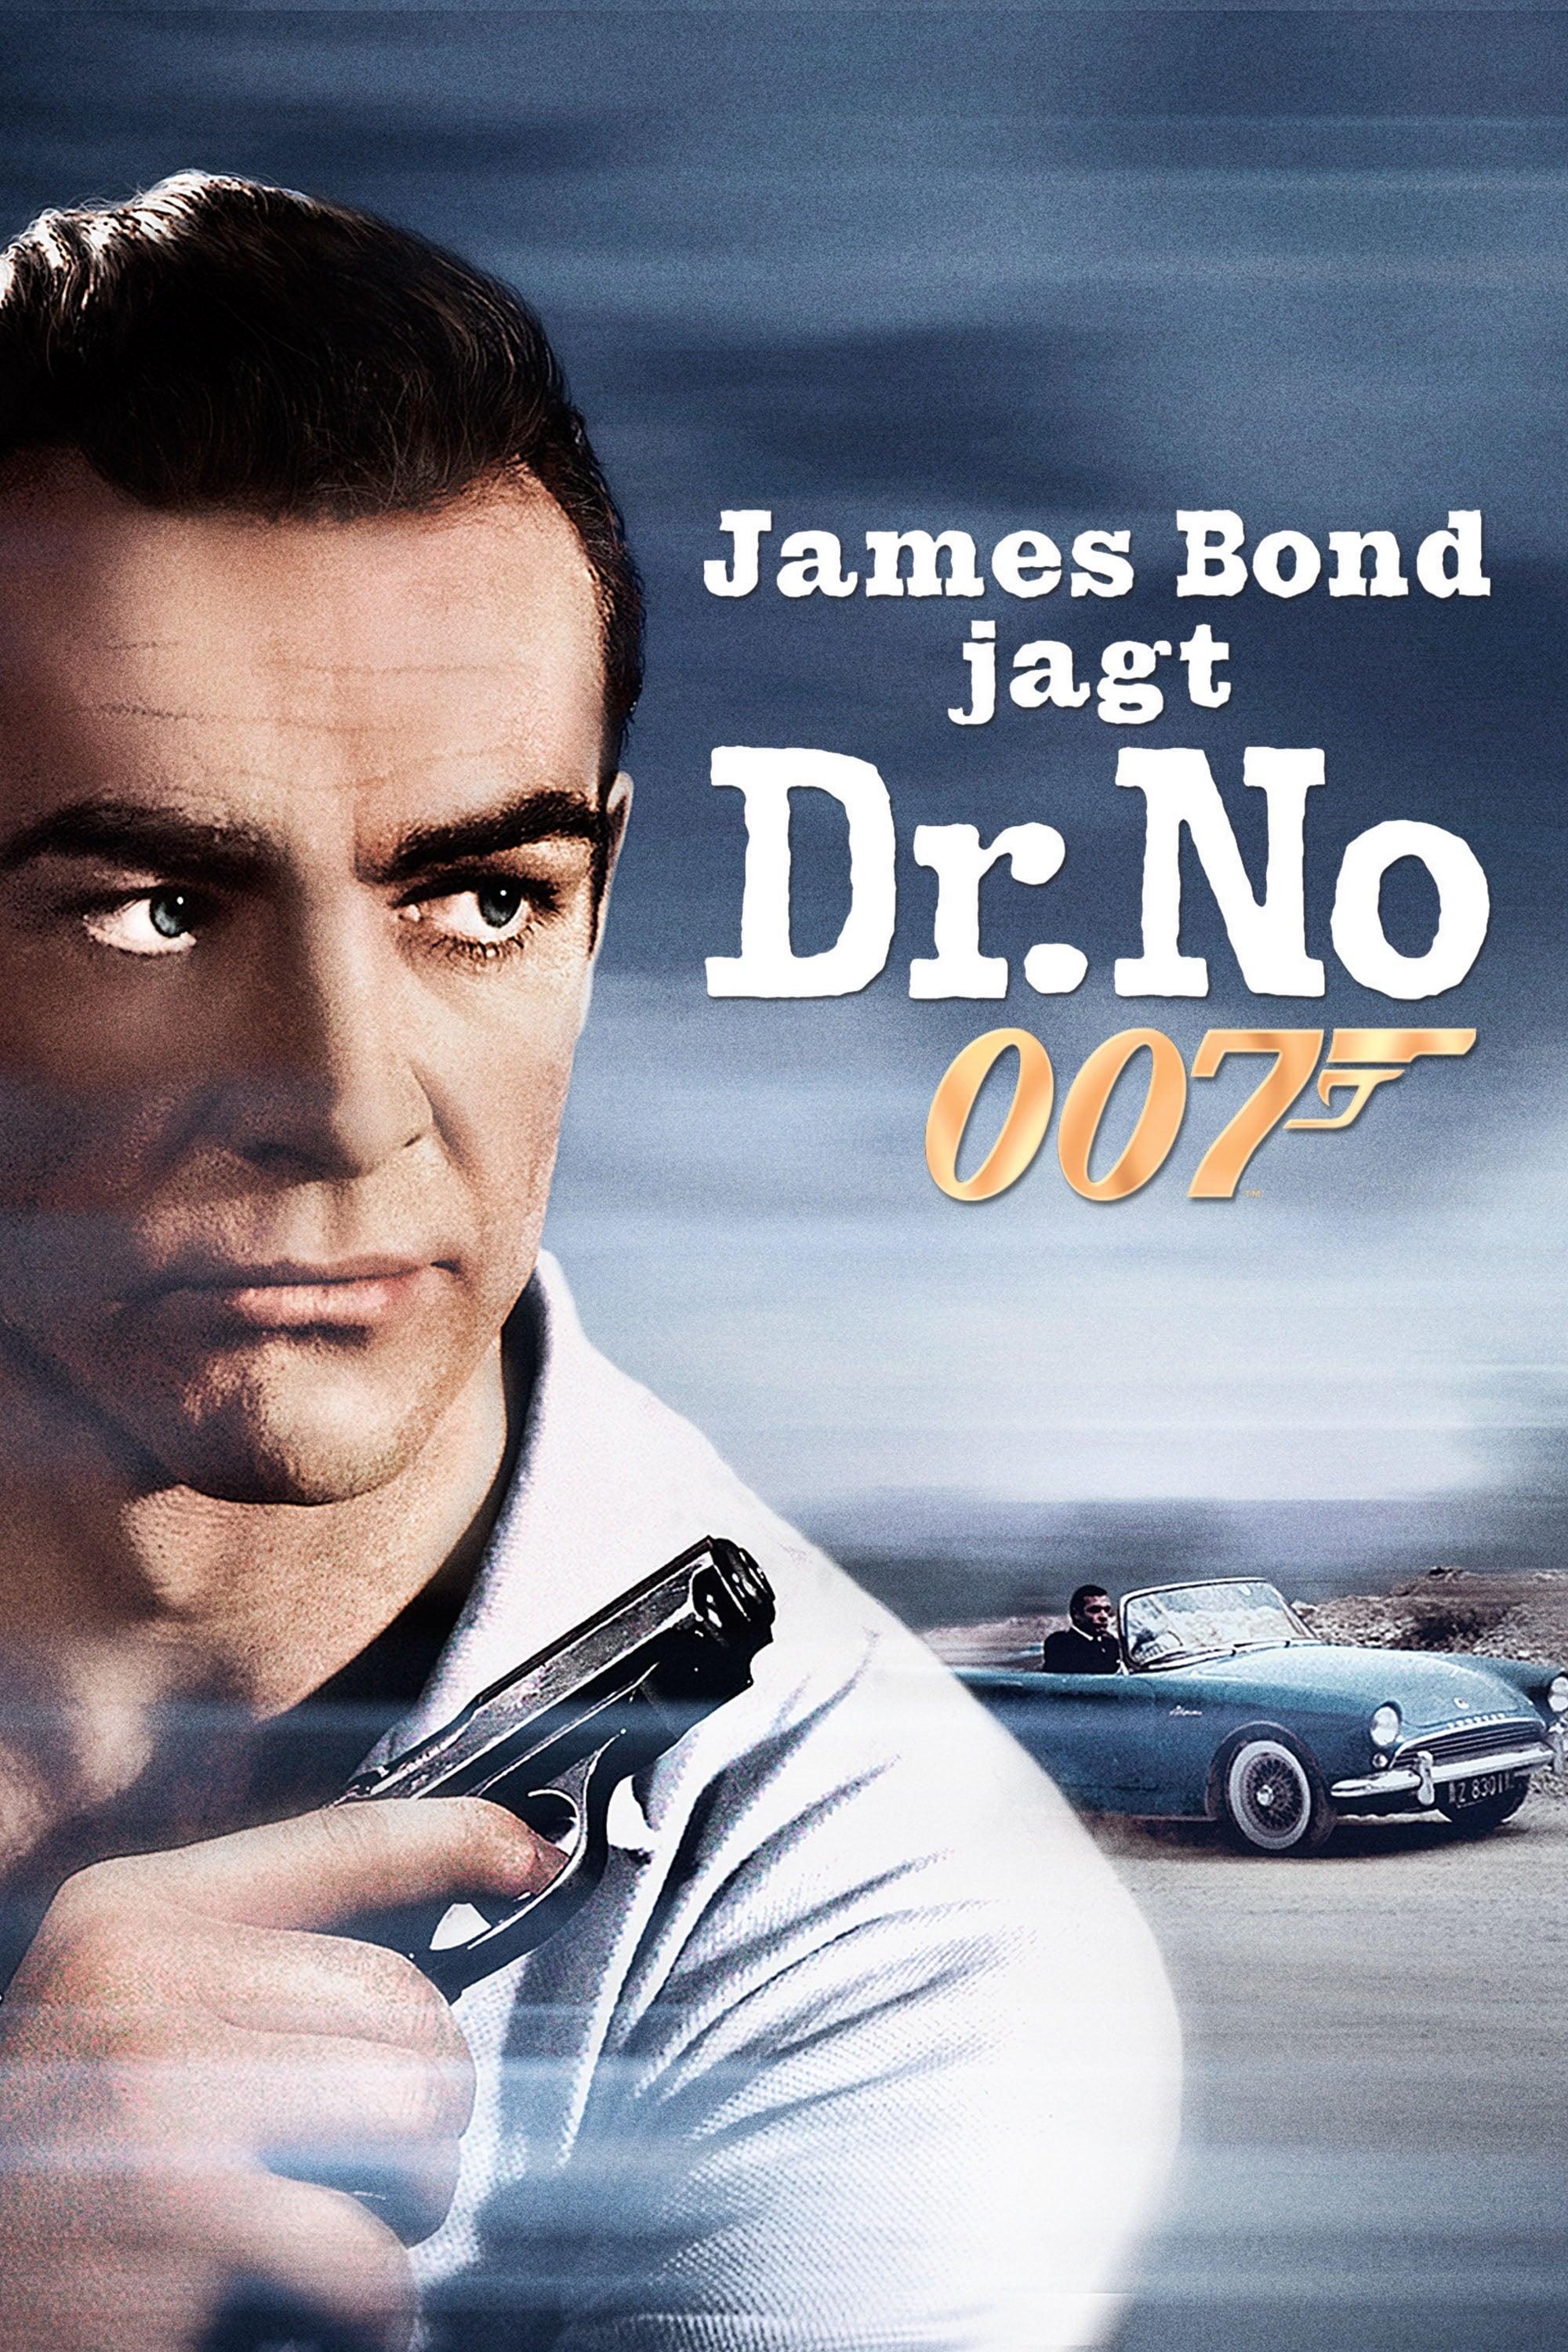 James Bond 007 jagt Dr. No poster